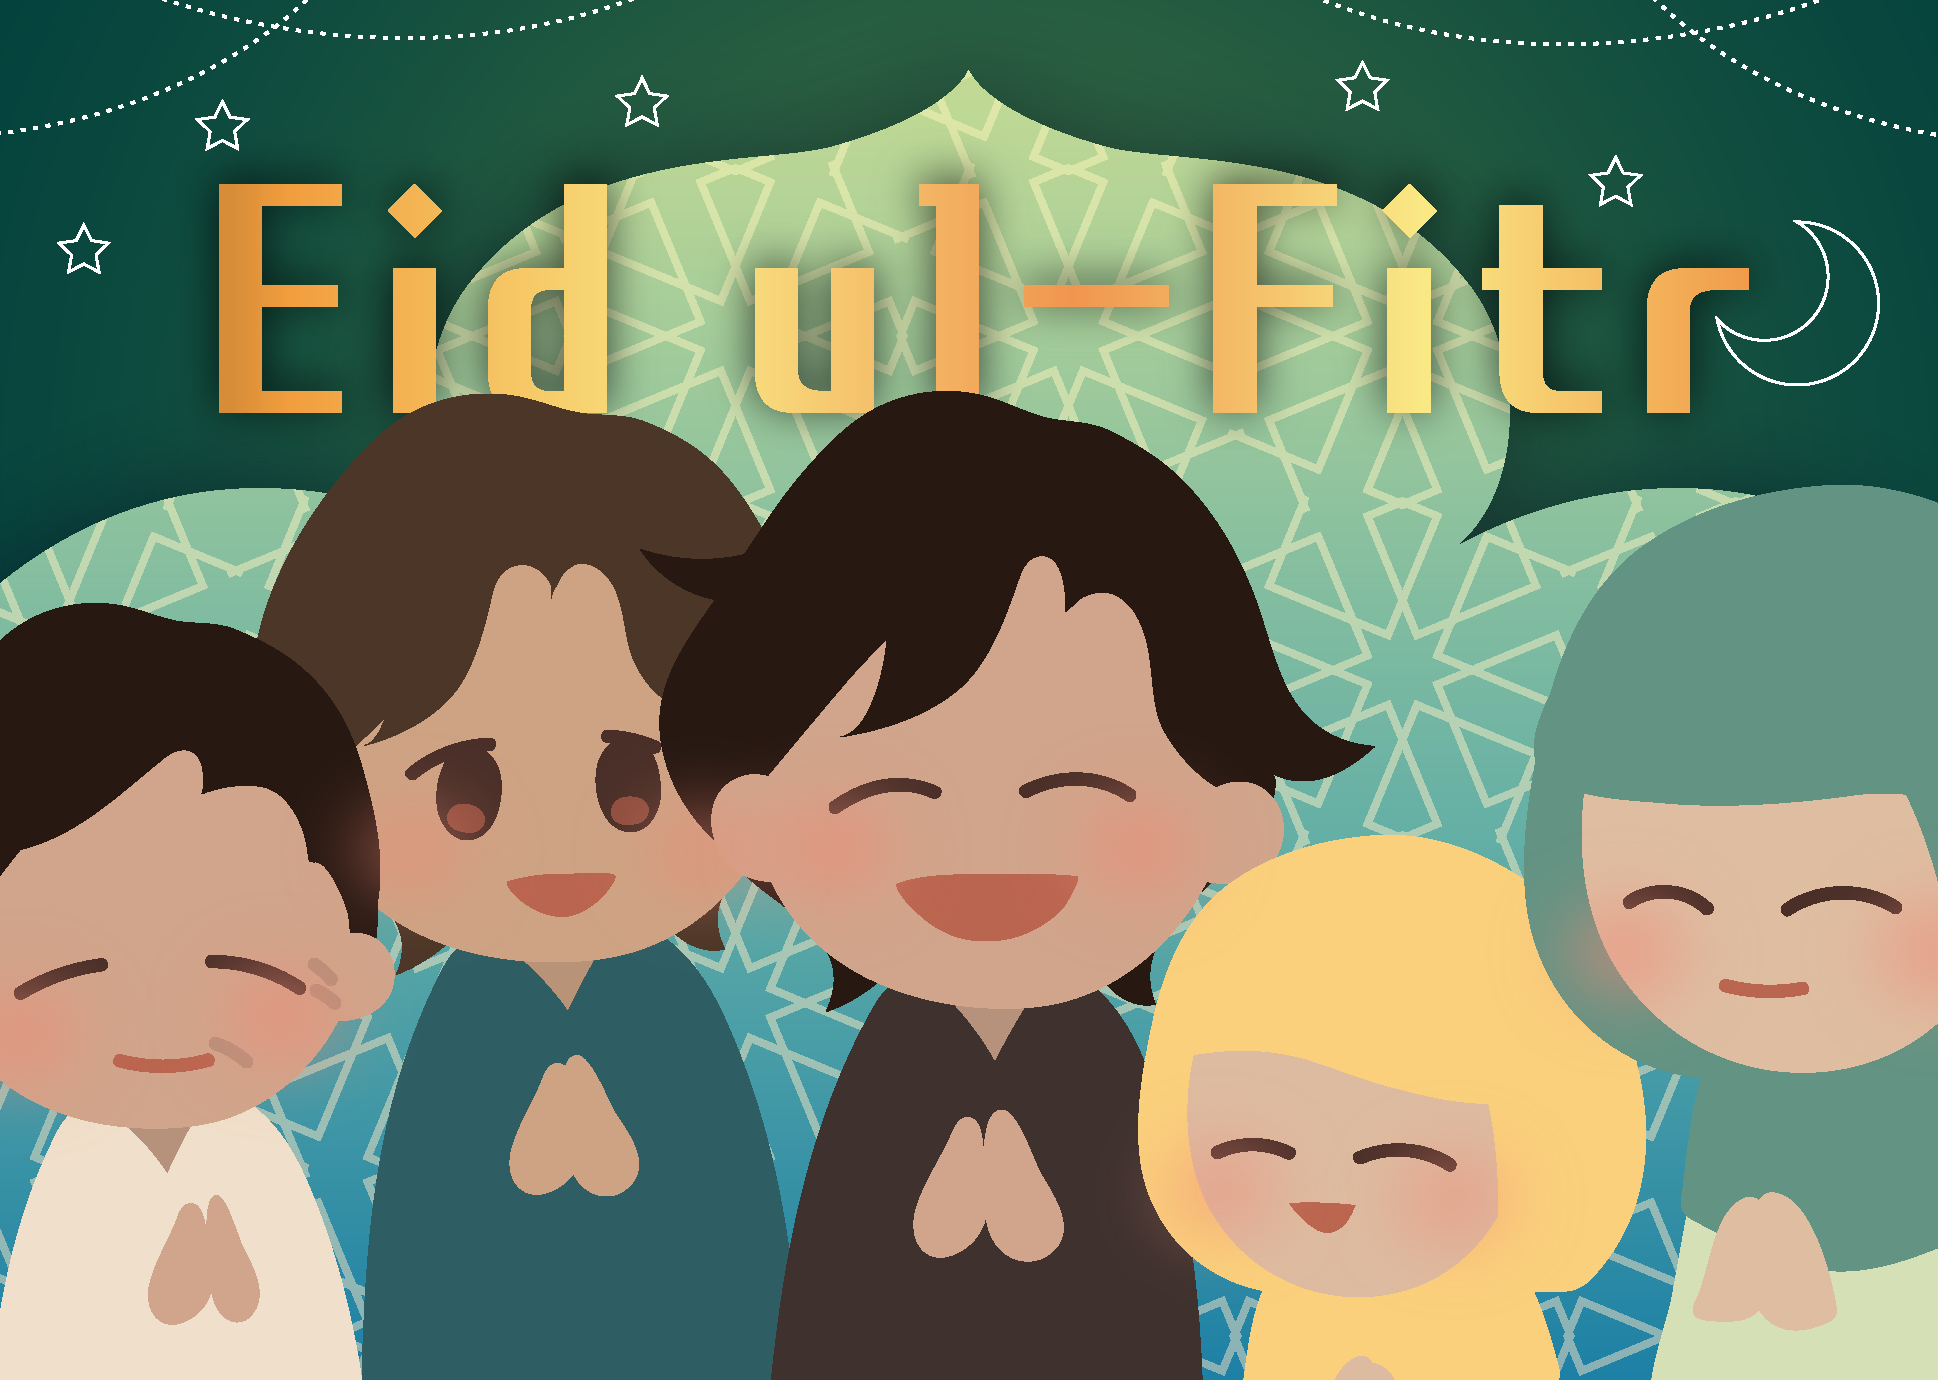 断食明け祭り(イード・アル-フィトル:Eid ul-Fitr): ID「休日」↔︎ JP「休日なし」